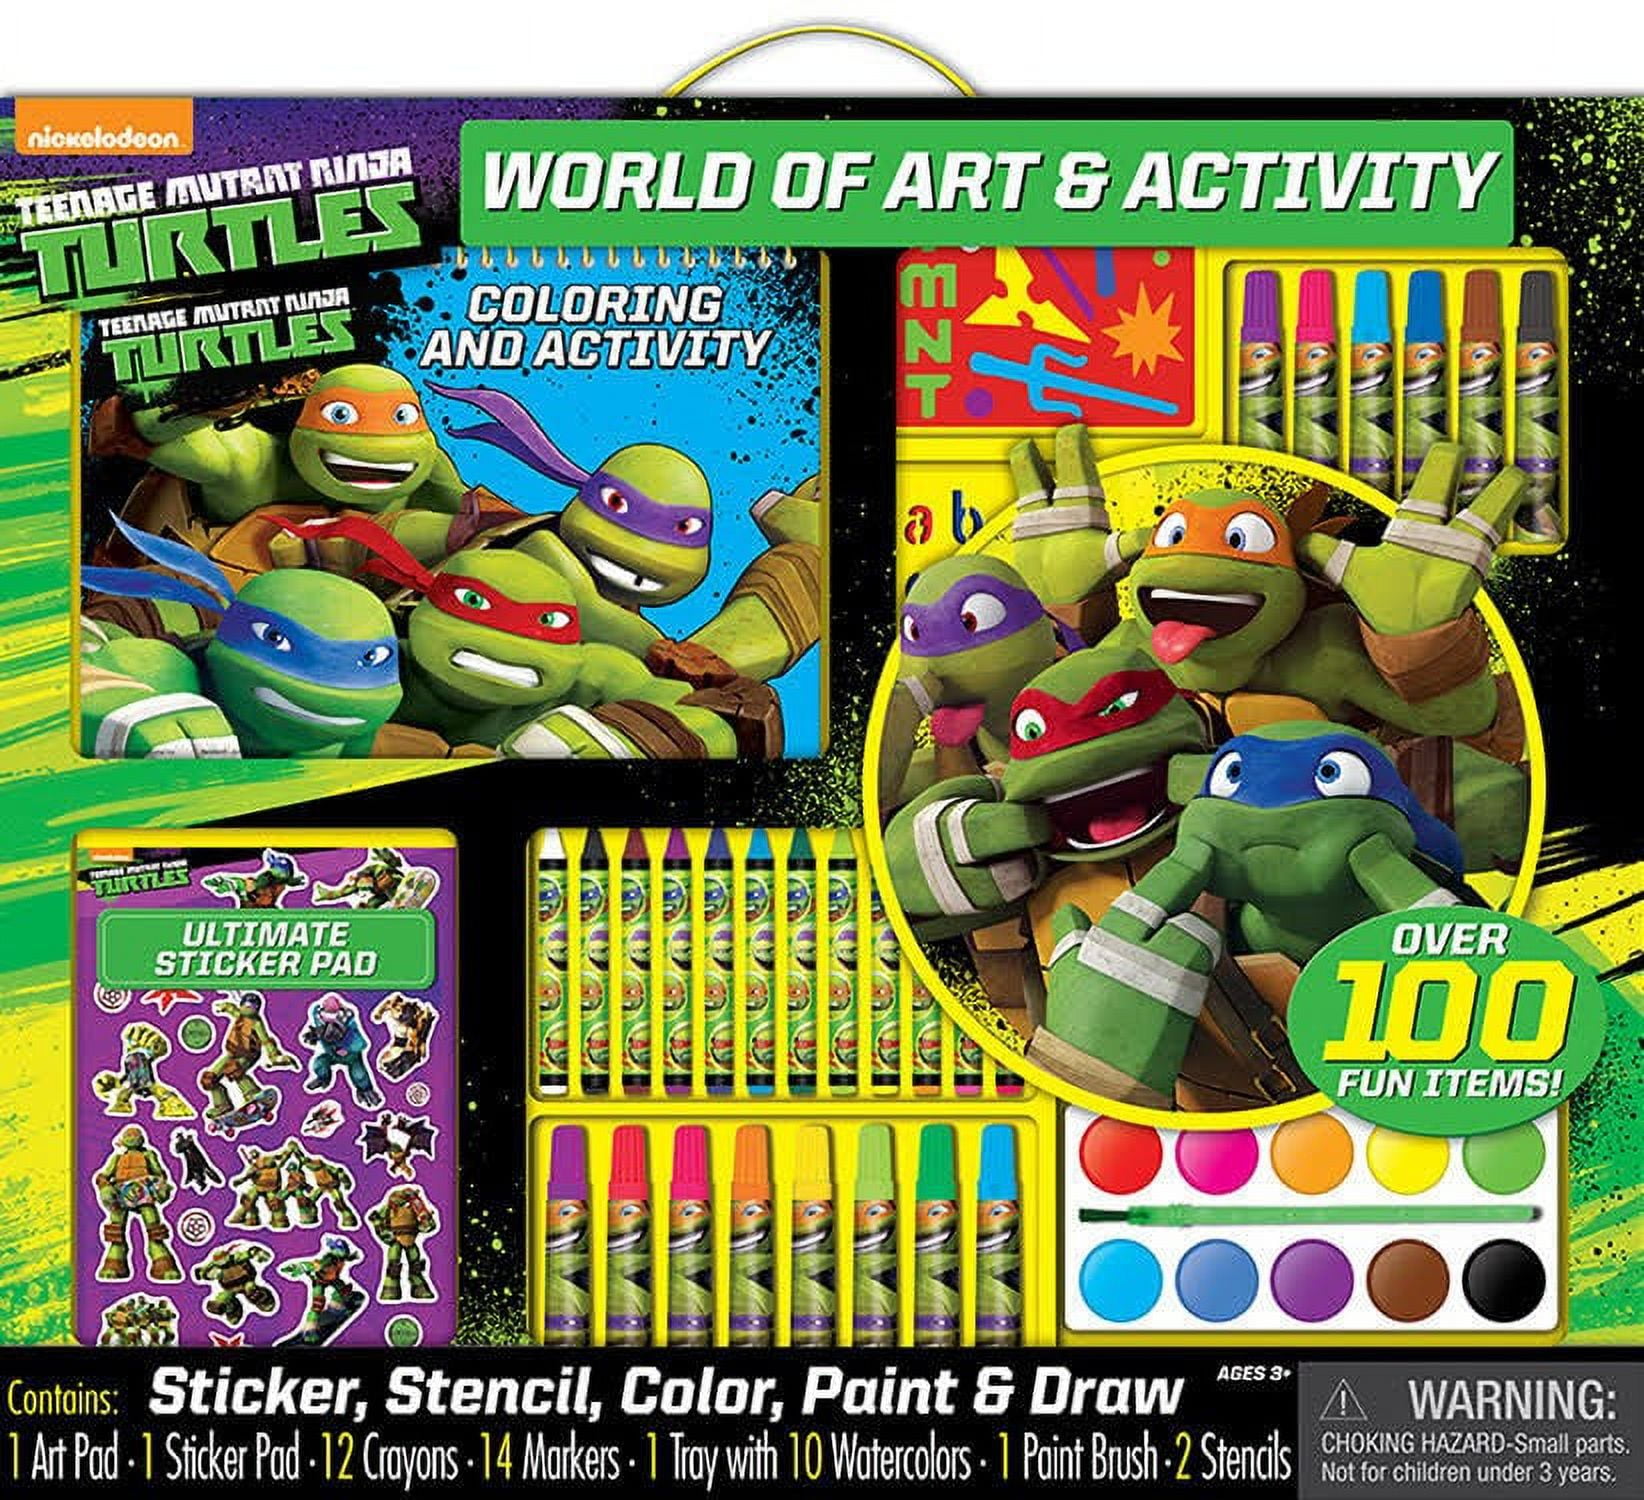 Teenage mutant ninja turtles world of art and activity